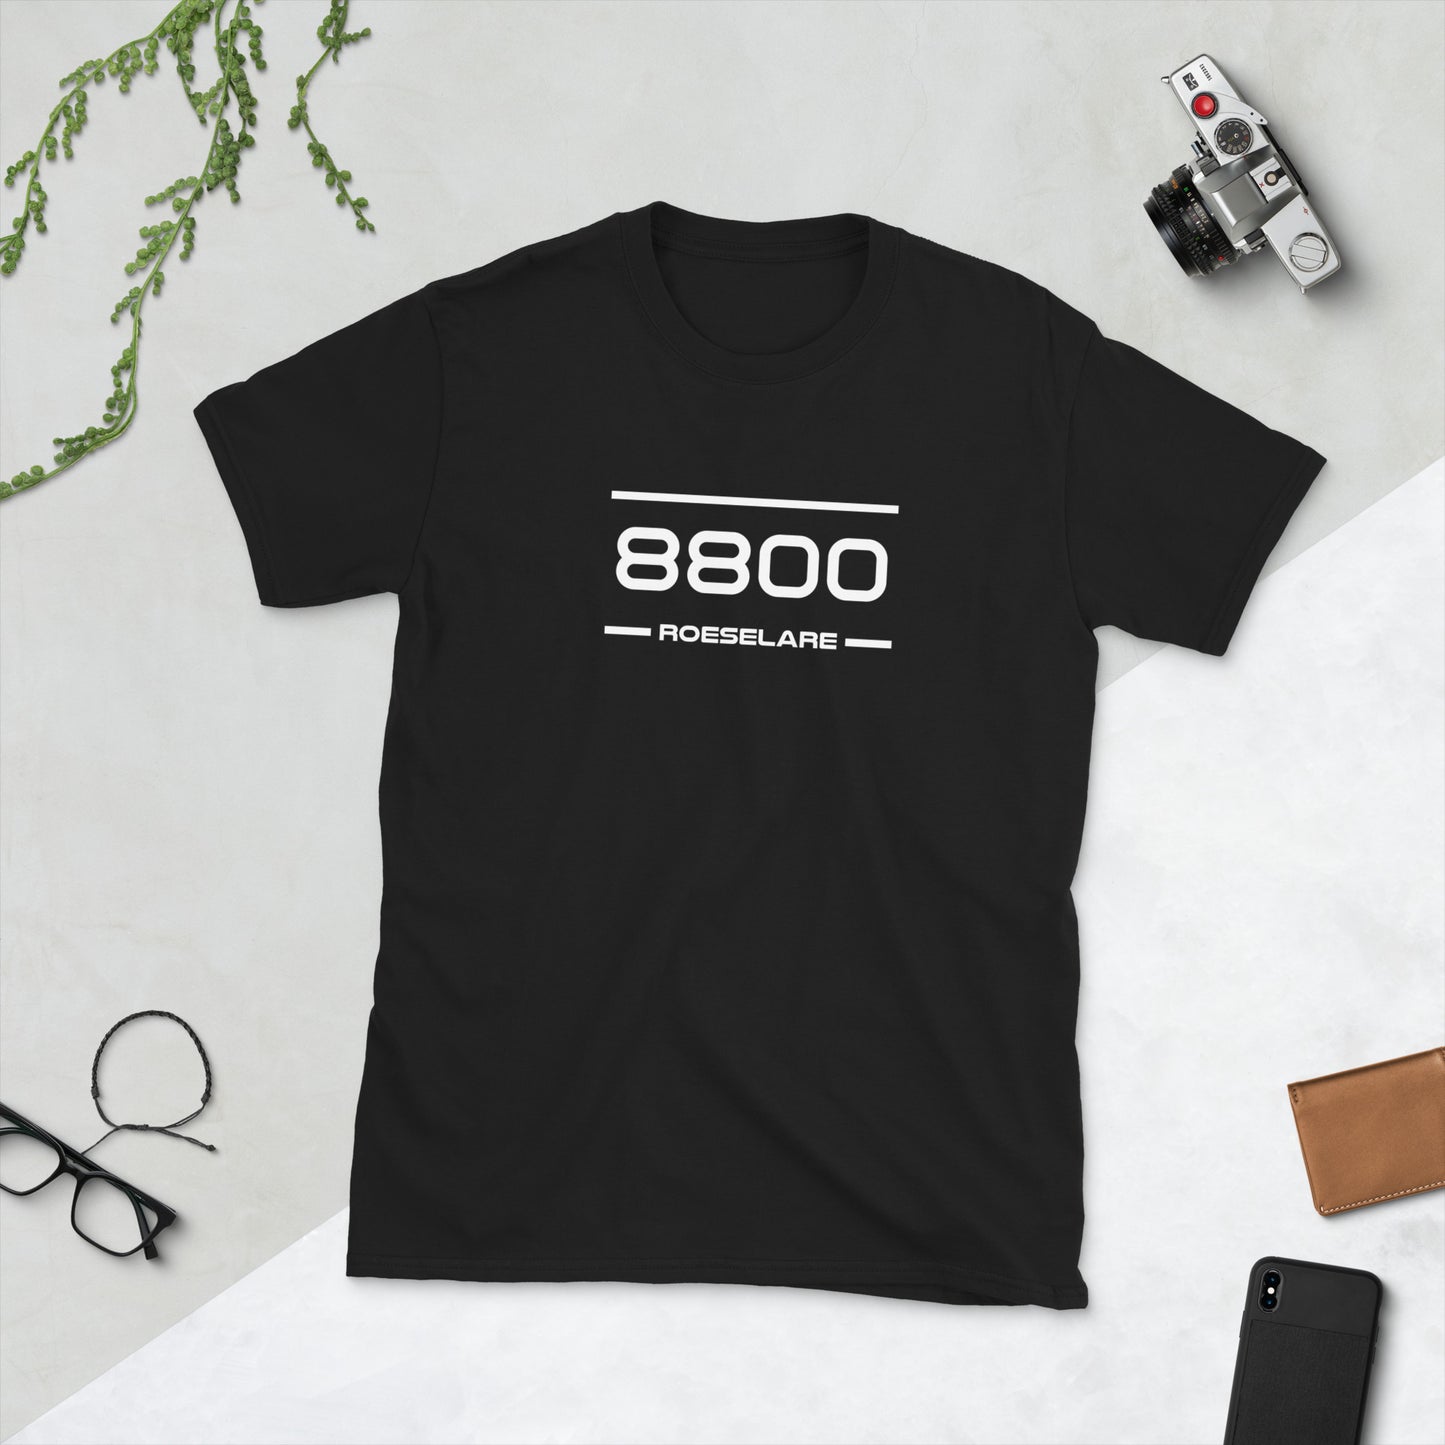 Tshirt - 8800 - Roeselare